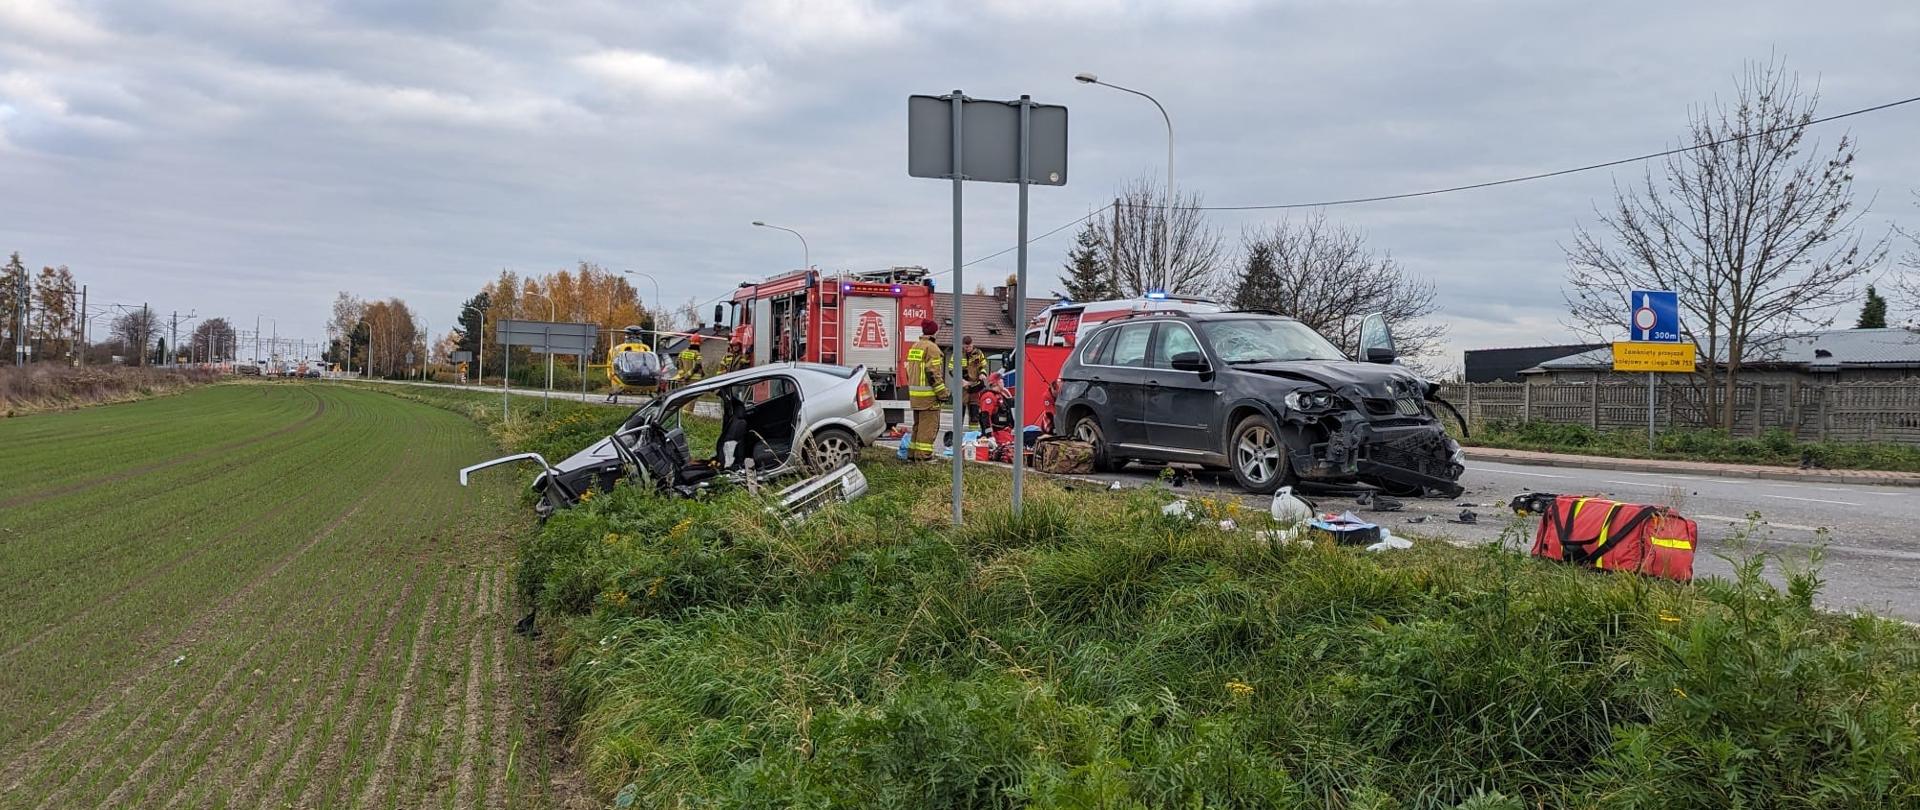 Na zdjęciu wypadek samochodowy (dwa rozbite samochody) w tle strażacy ratownicy medyczni pojazd pożarniczy oraz śmigłowiec LPR.